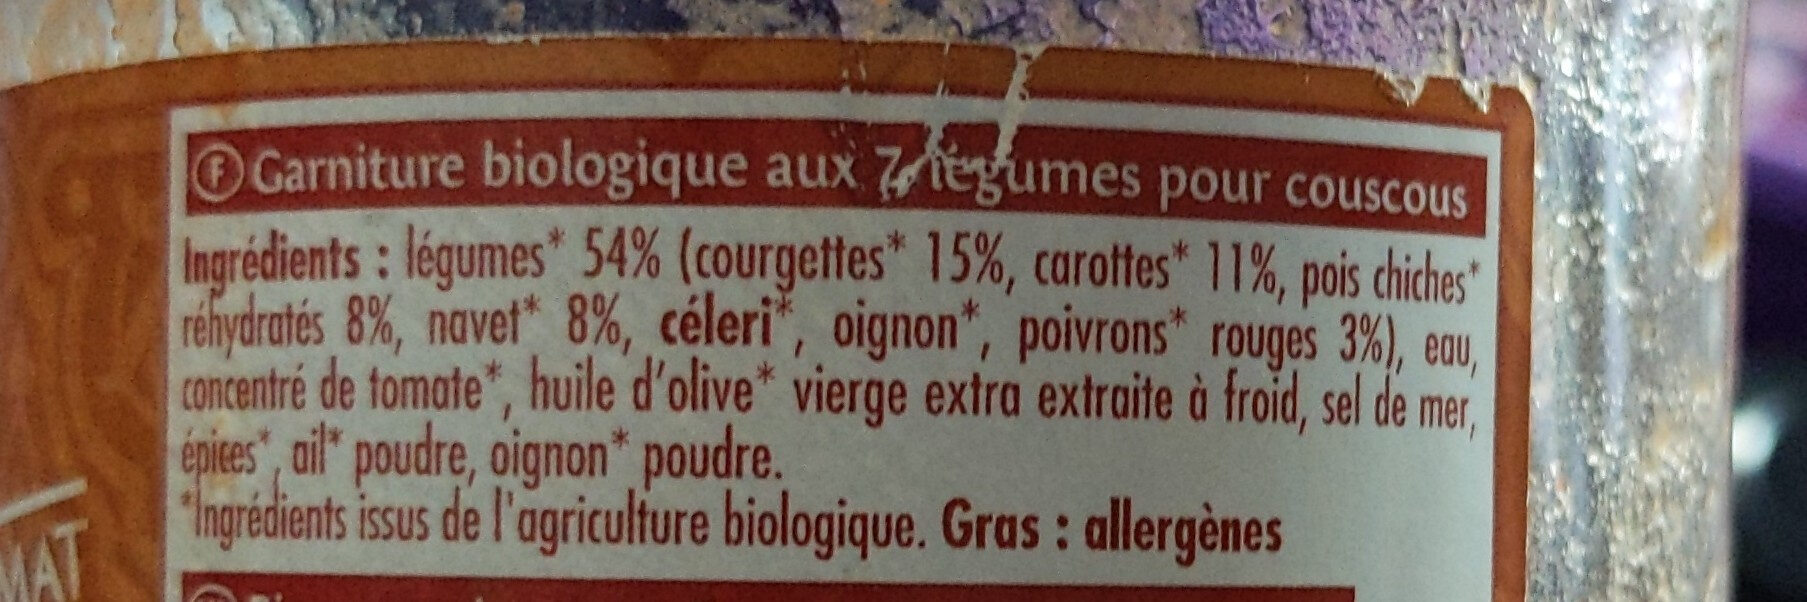 Couscous aux 7 légumes - Ingrediënten - fr